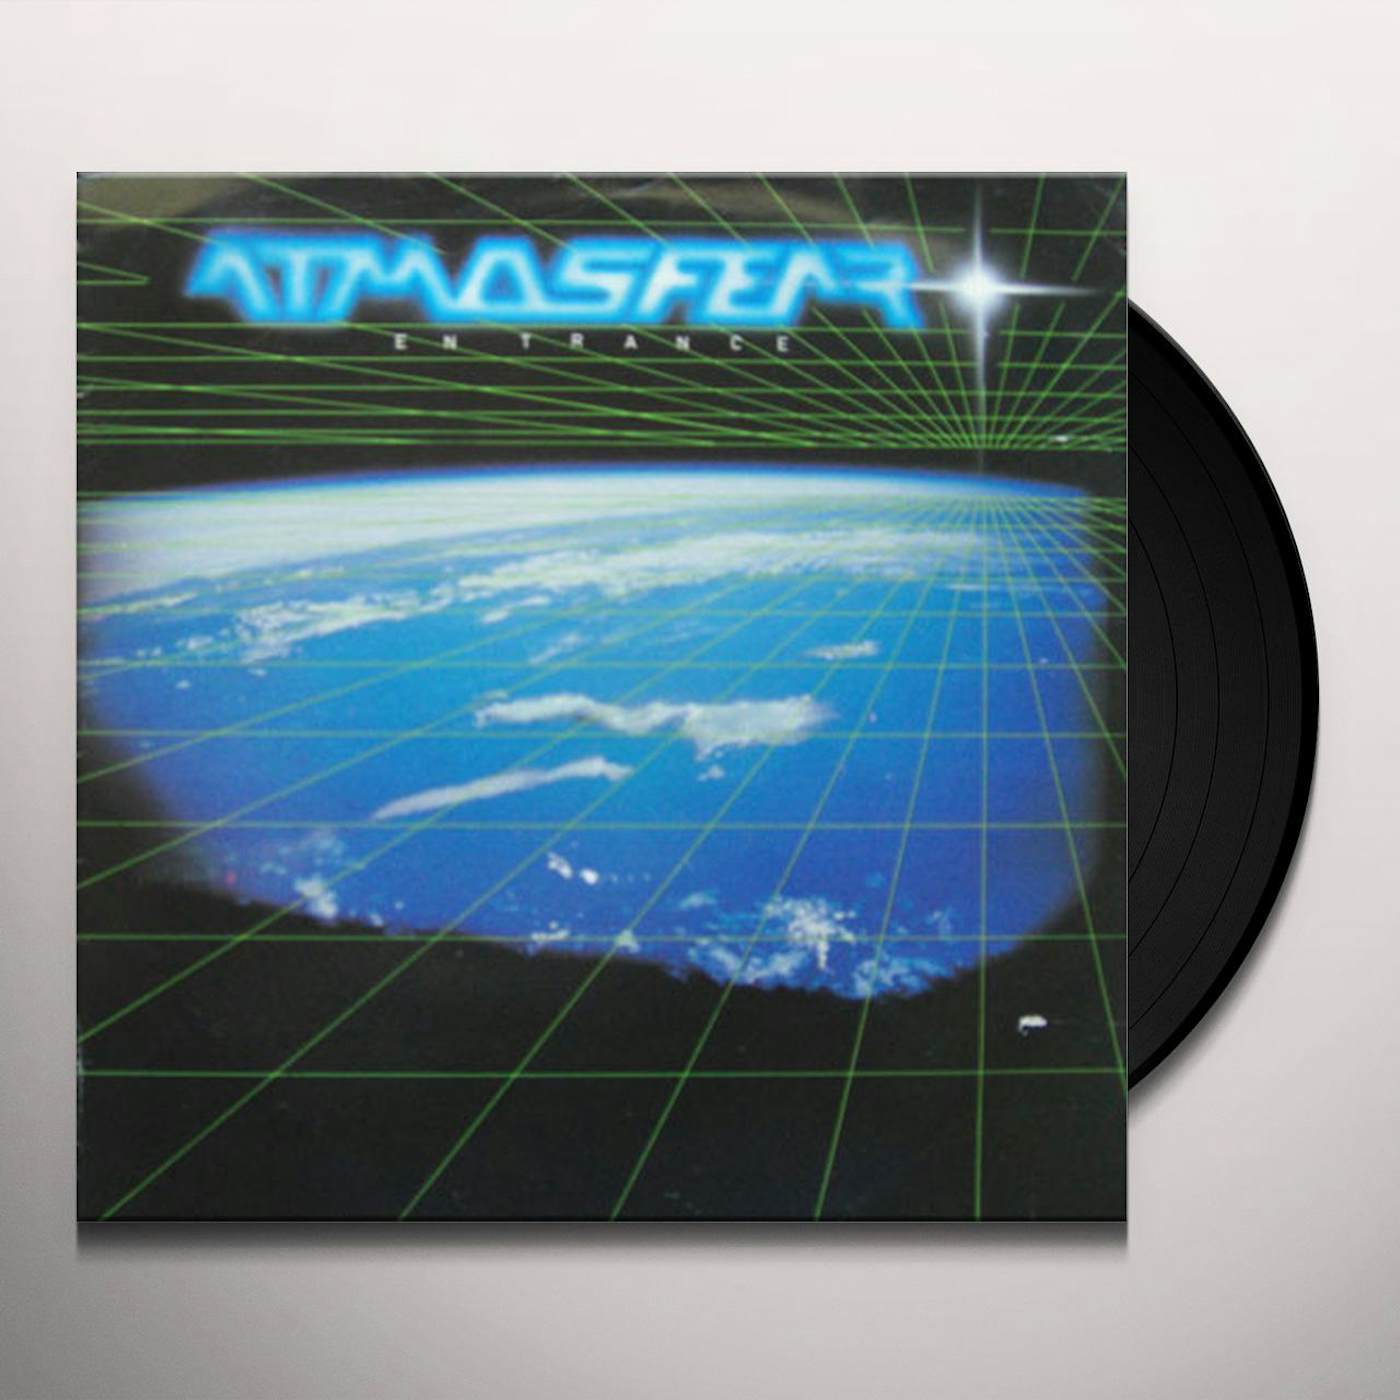 Atmosfear En Trance Vinyl Record